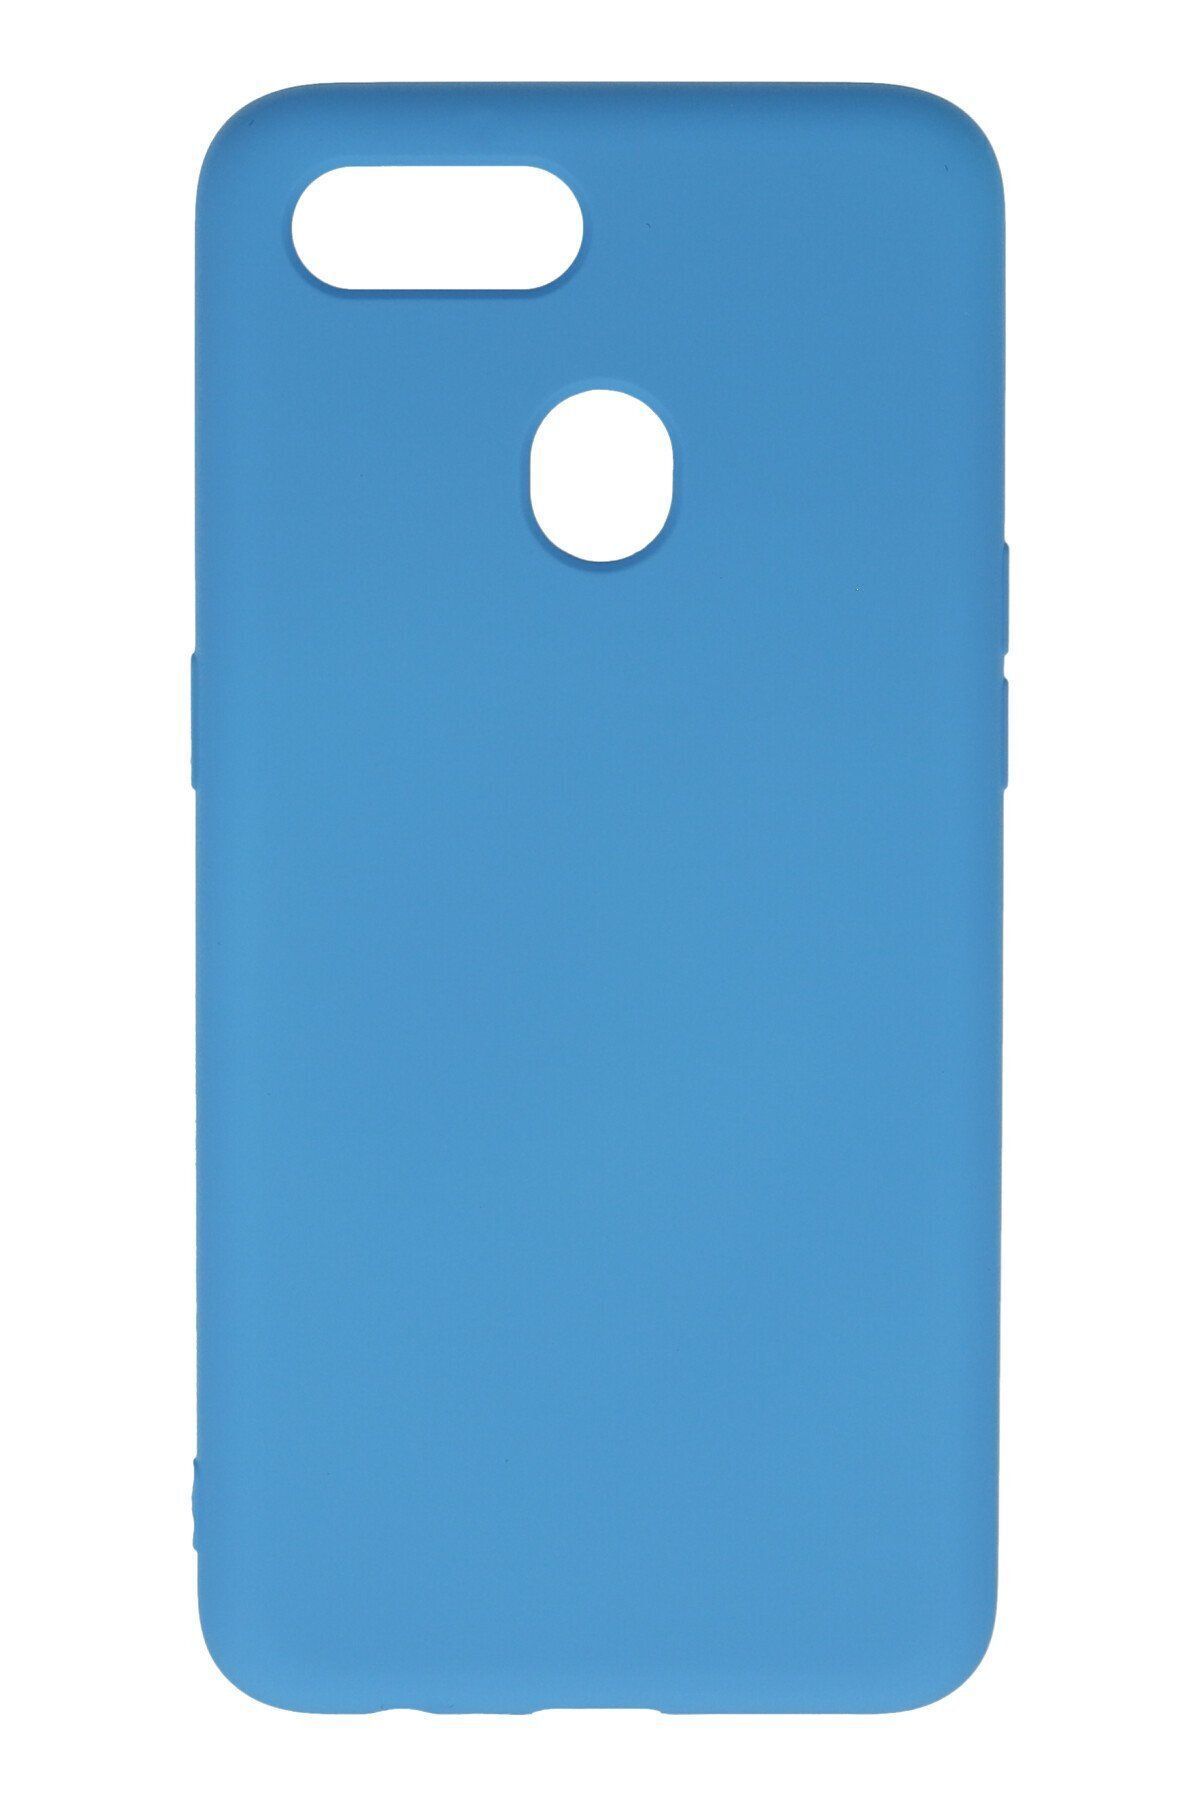 cepmoda Oppo AX7 Telefon Kılıfı - Soft Dokulu İçi Kadife Lansman Kapak - Mavi